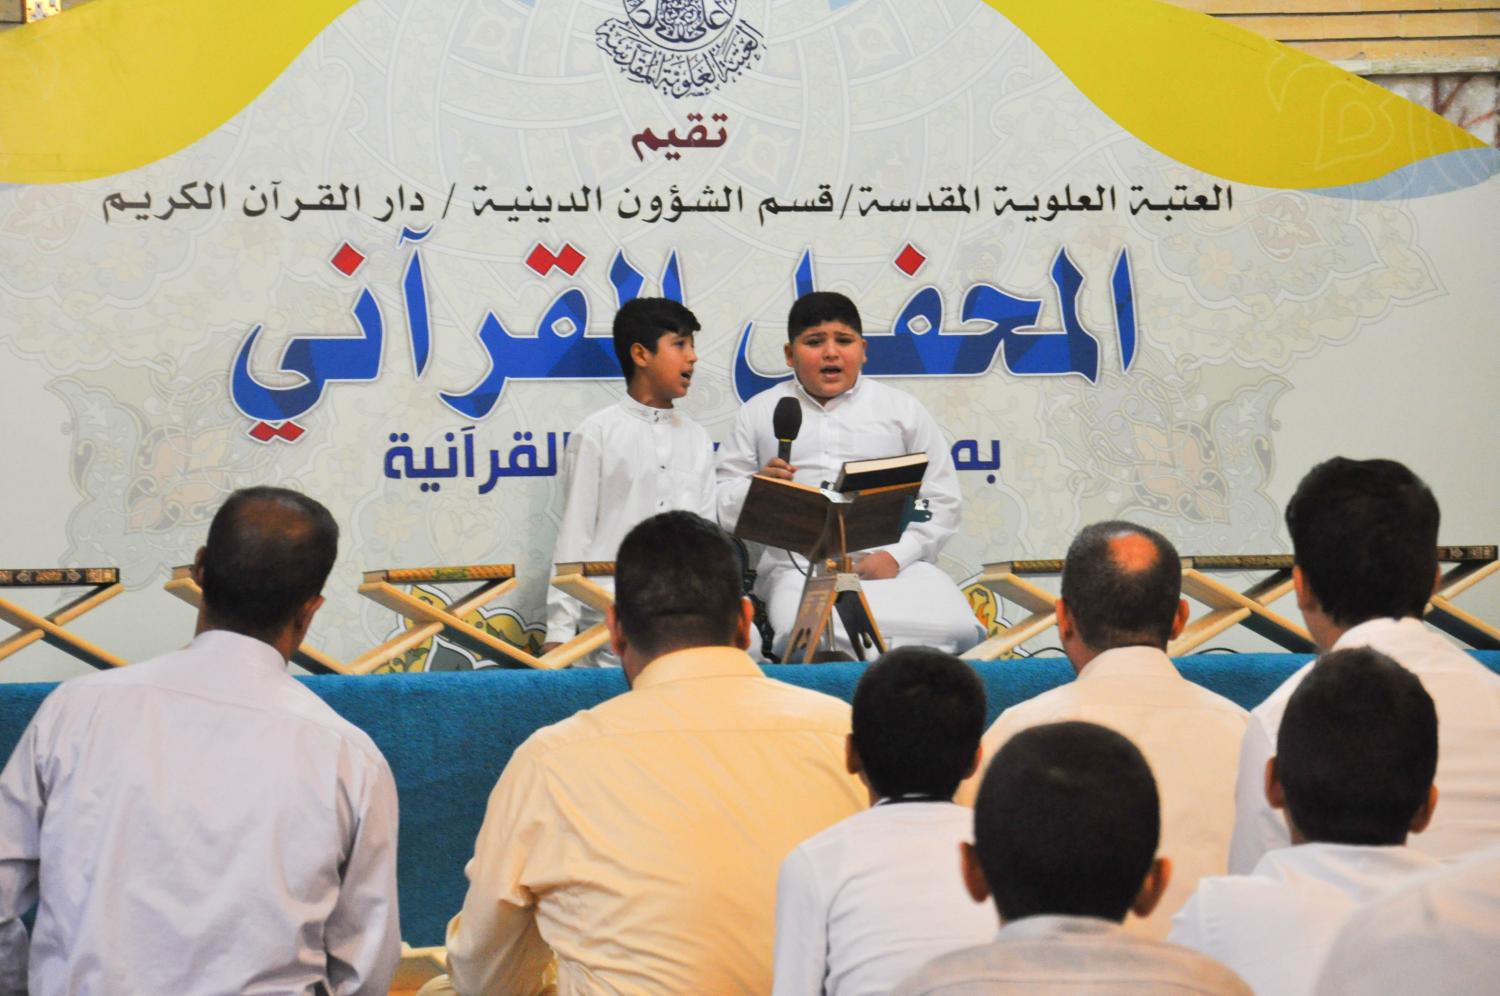 المحفل القرآني باستضافة وفد جامع الرسول الاعظم (ص) من بغداد | 2016